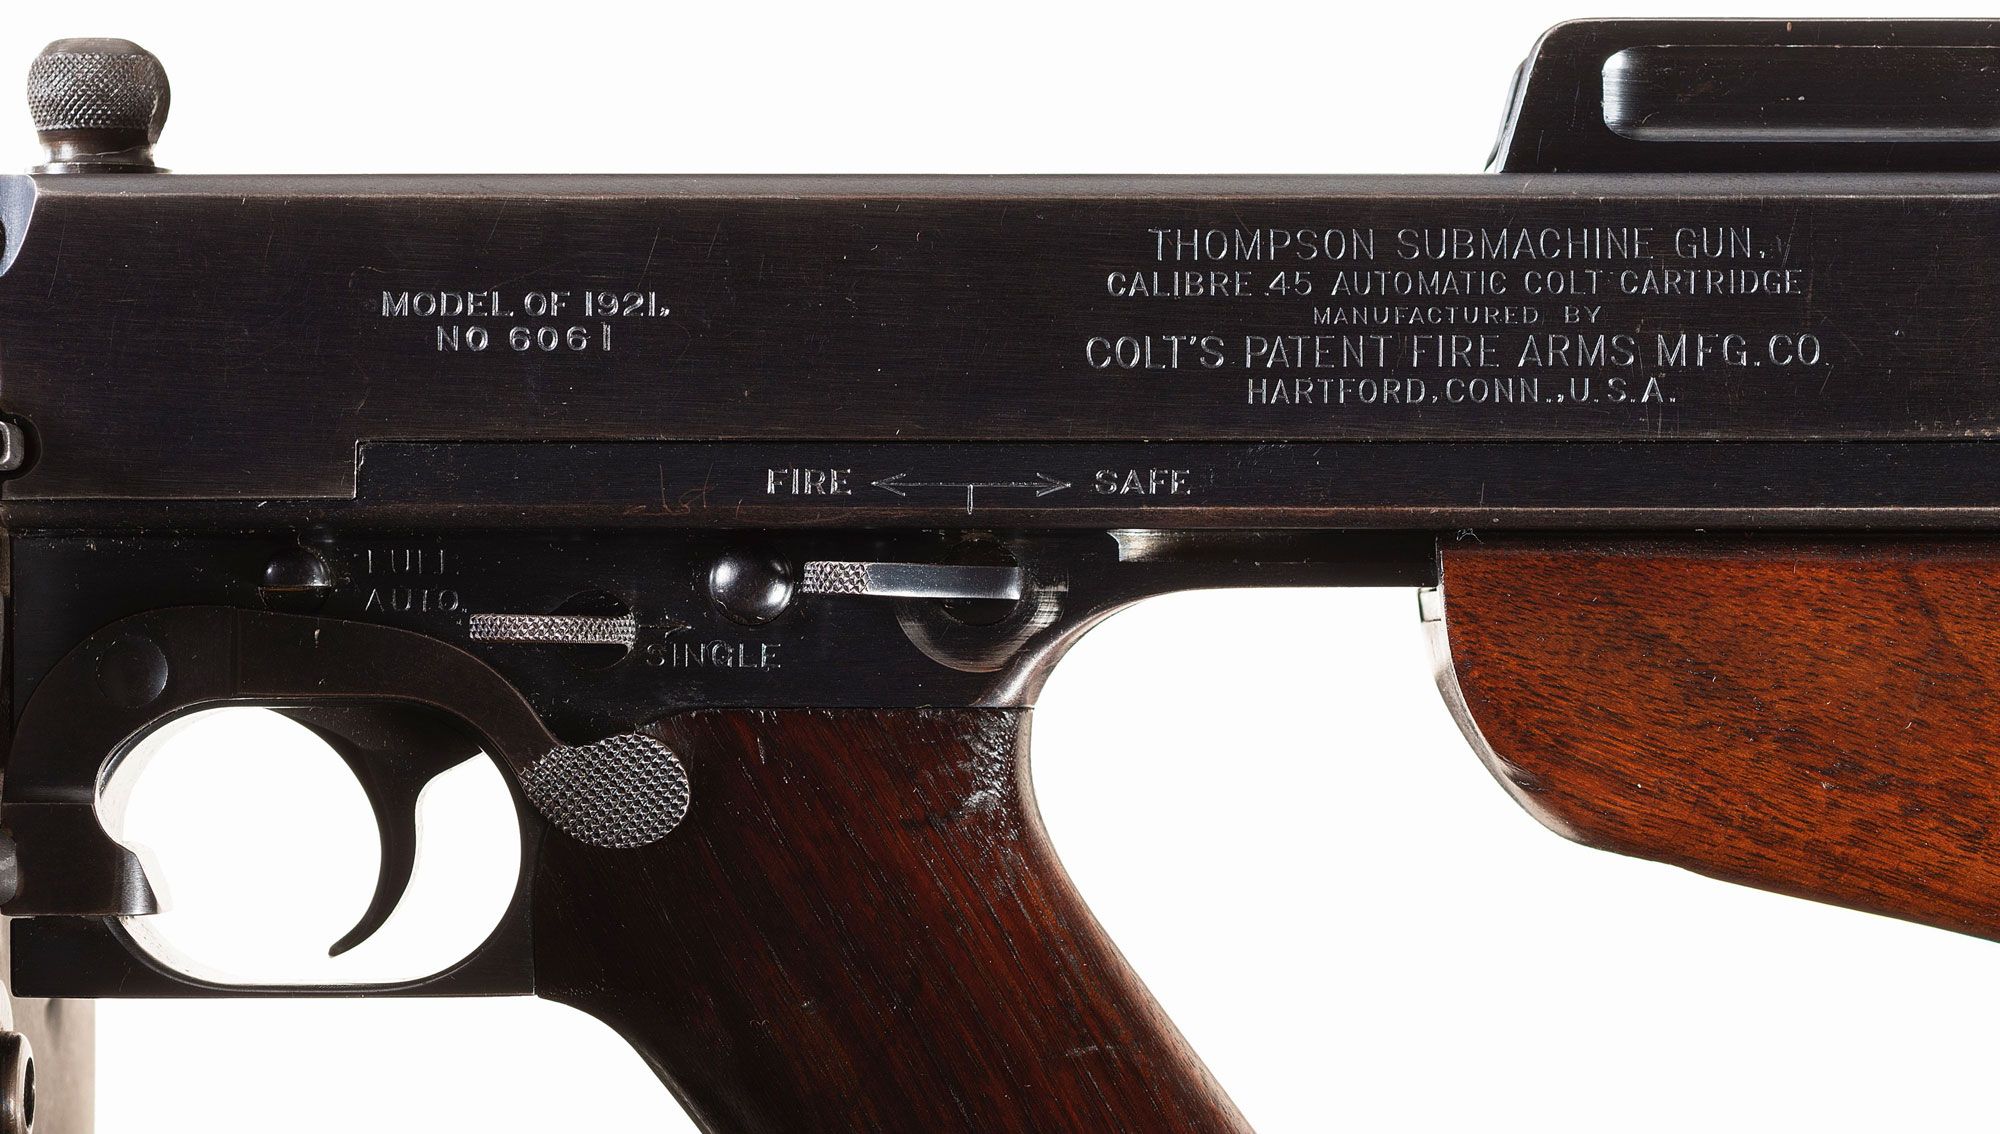 Ohio shipped Model 1921 Thompson submachine gun